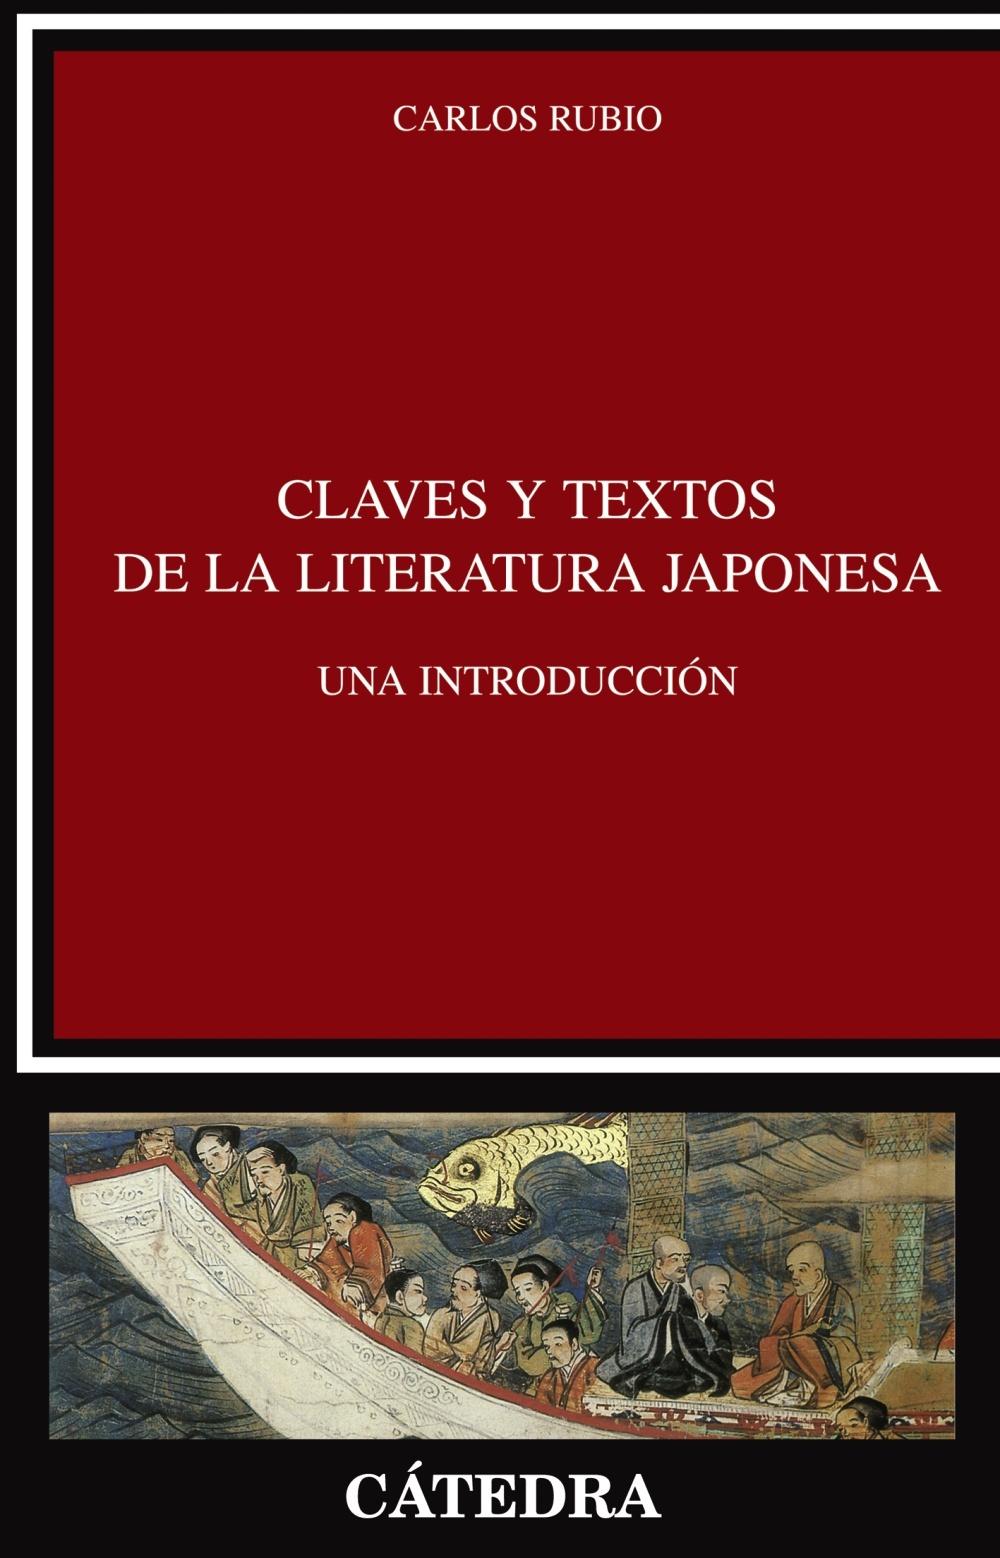 Foto Claves y textos de la literatura japonesa foto 189913